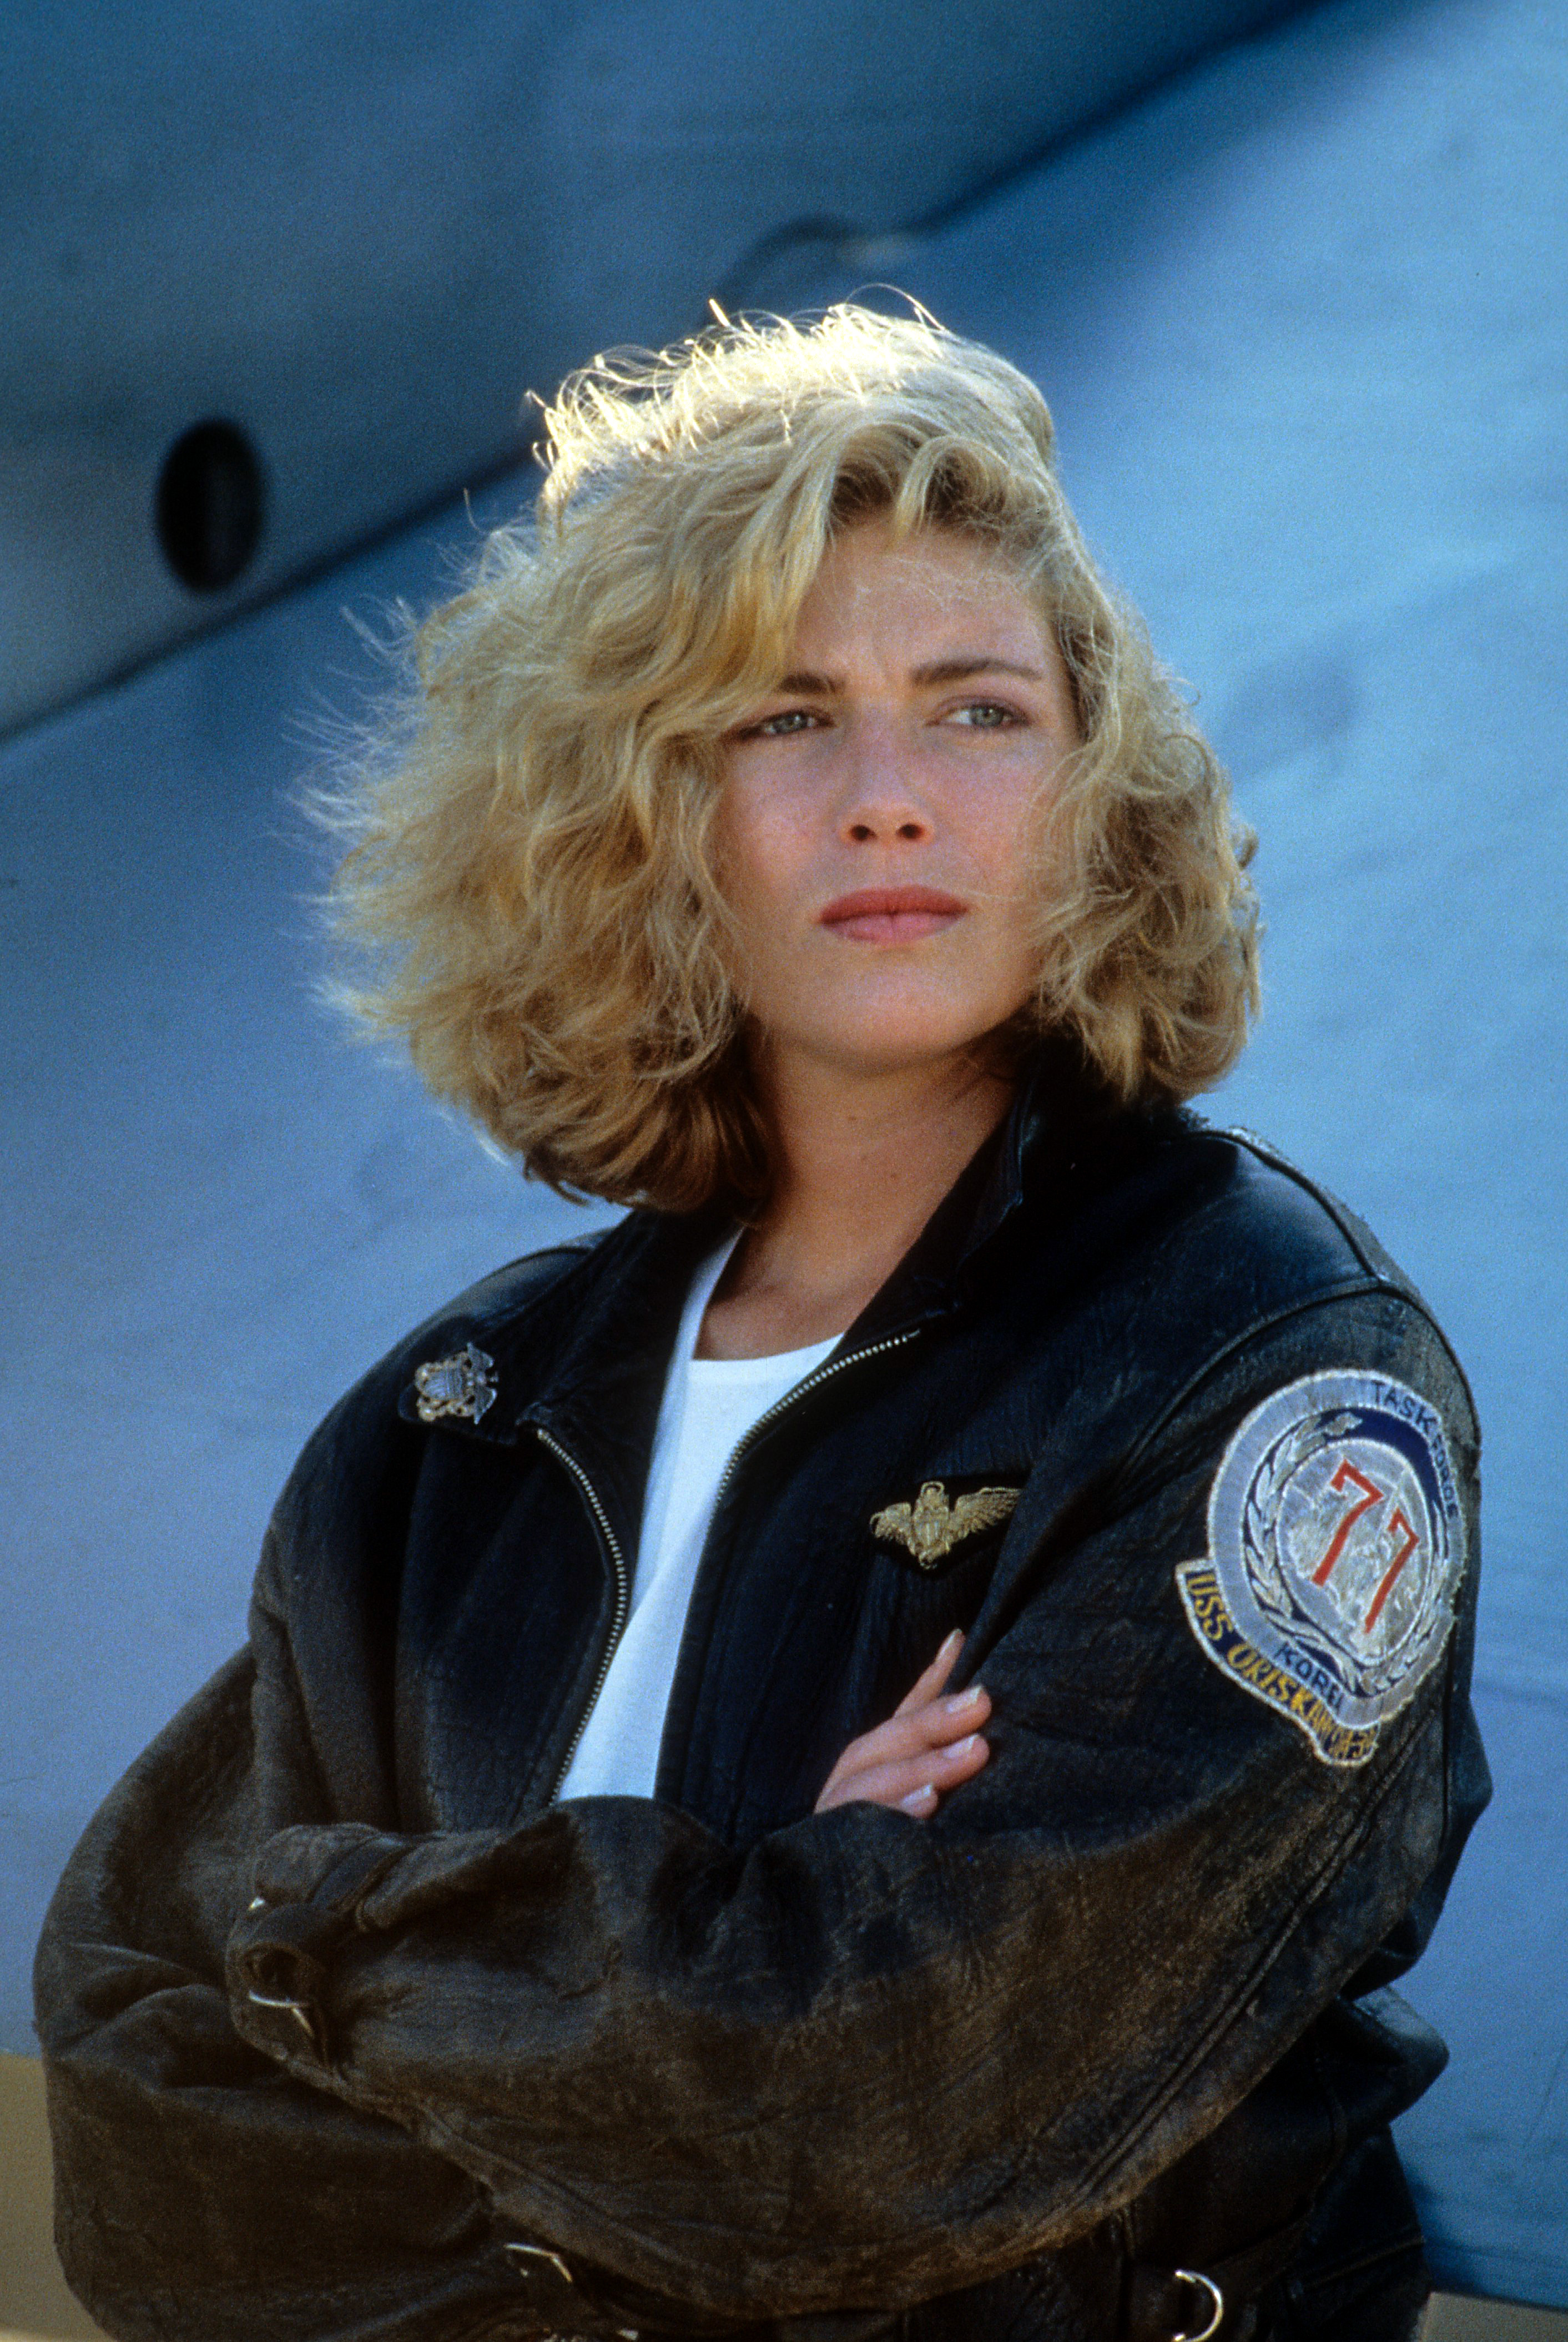 Kelly McGillis in einer Szene aus "Top Gun" von 1986 | Quelle: Getty Images